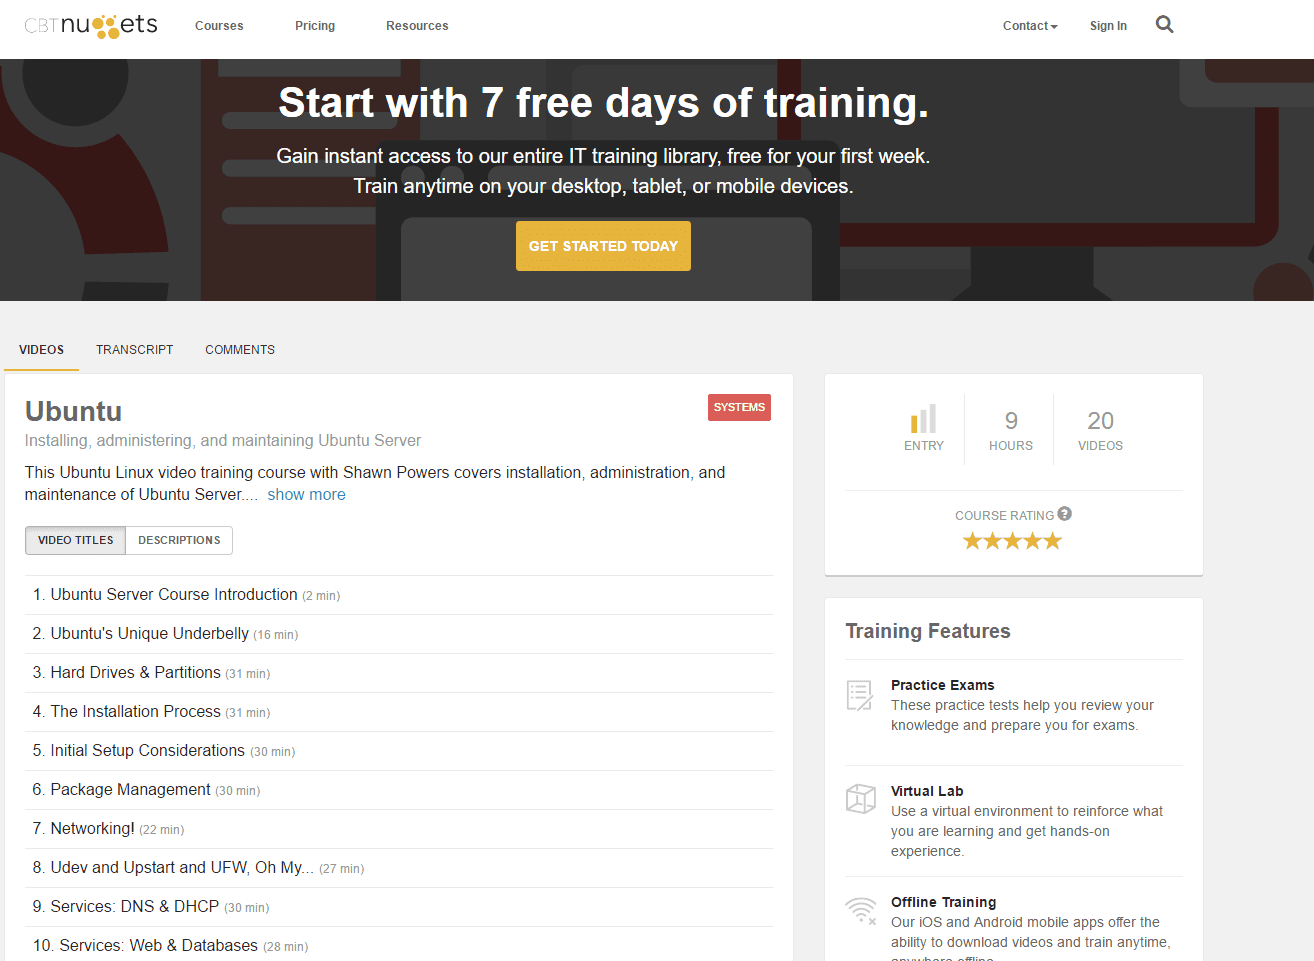 Cursos de treinamento CBT Nuggets Linux